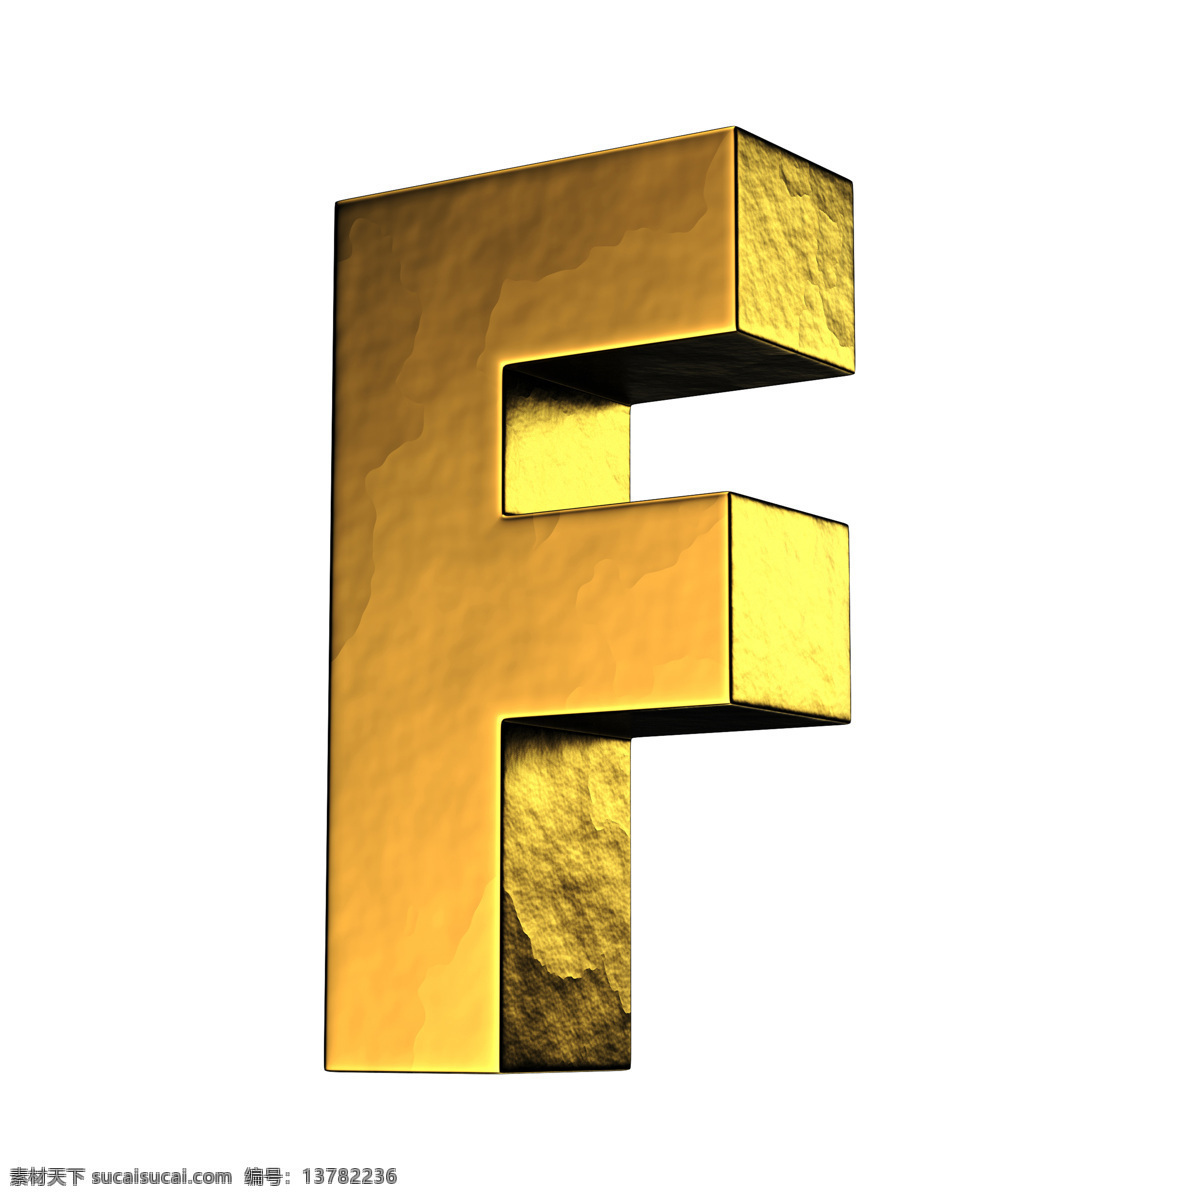 金色 金属 金属字母 时尚 质感 装饰 字母 设计素材 模板下载 3d立体字母 3d字母设计 字母设计 数字主题 矢量图 艺术字